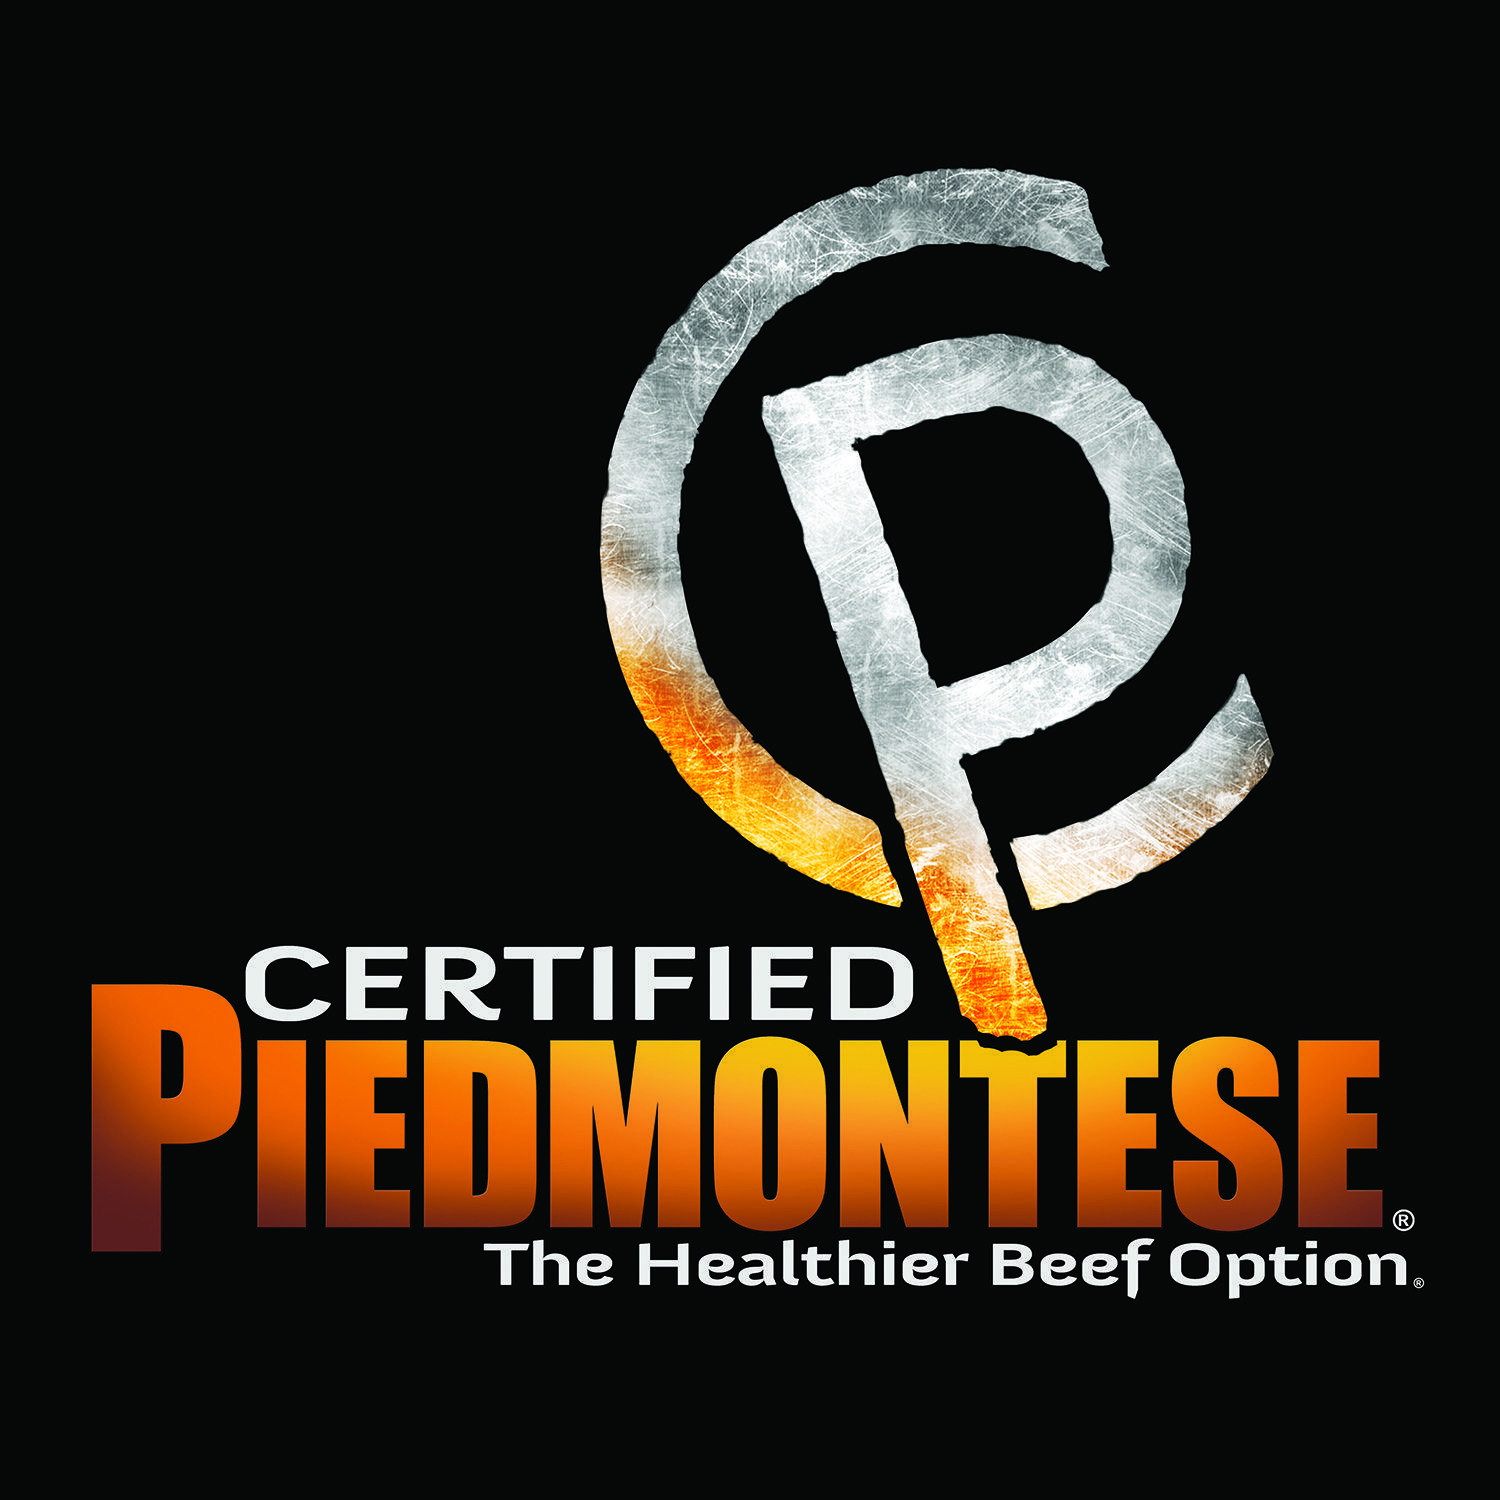 Piedmontese Logo - Amazon.com: Certified Piedmontese